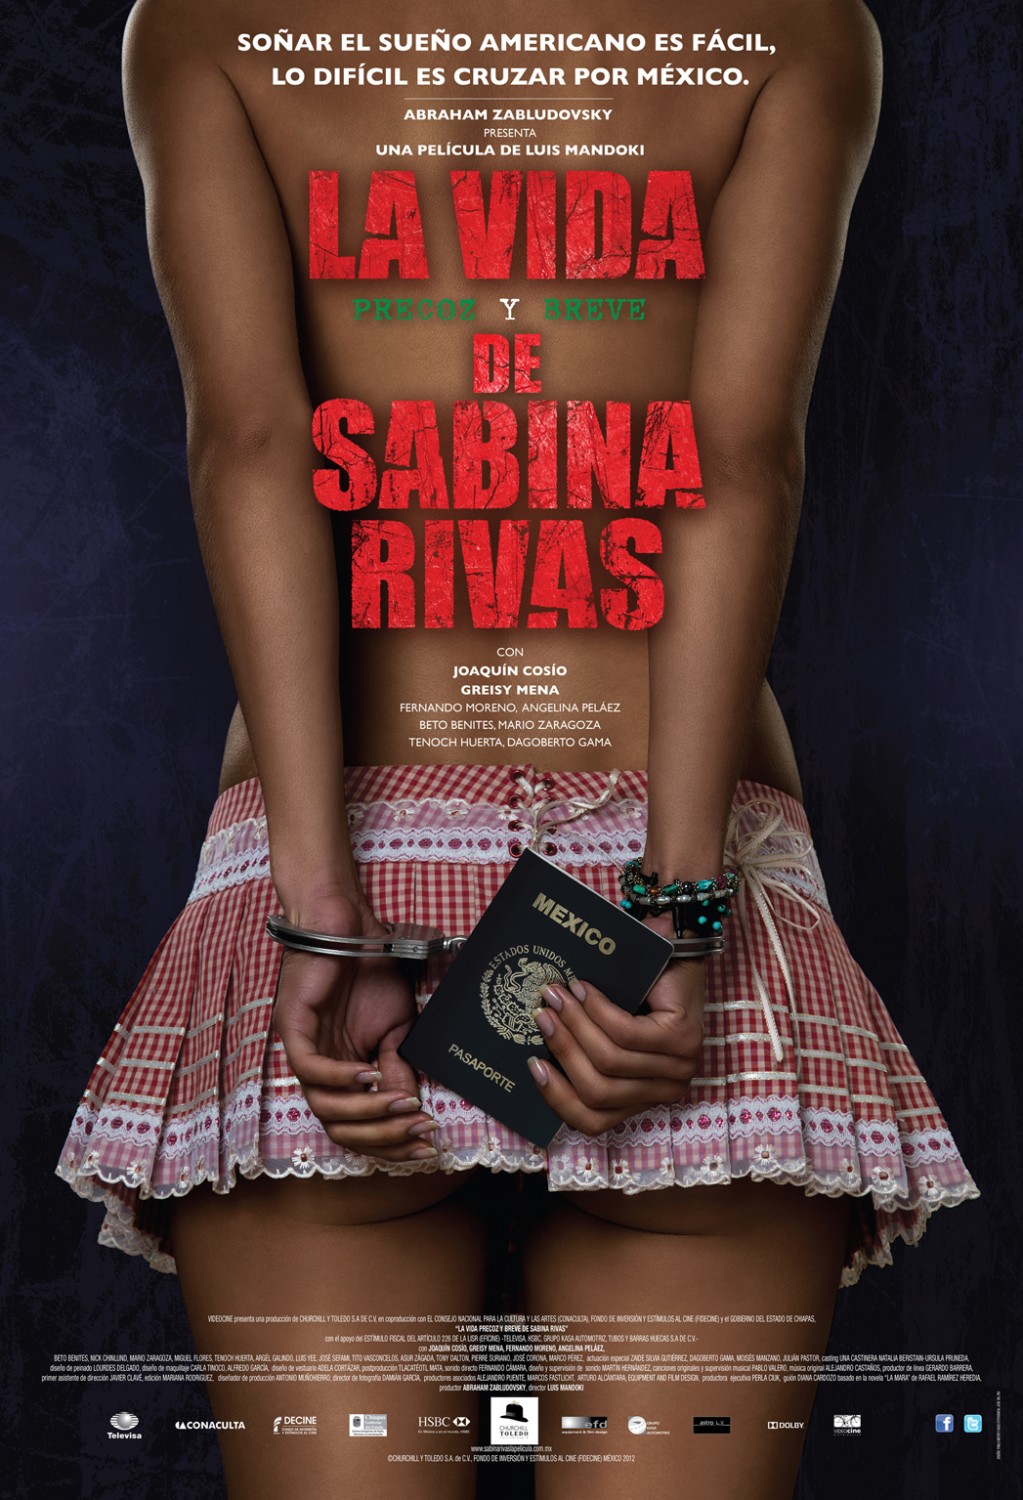 Extra Large Movie Poster Image for La vida precoz y breve de Sabina Rivas 